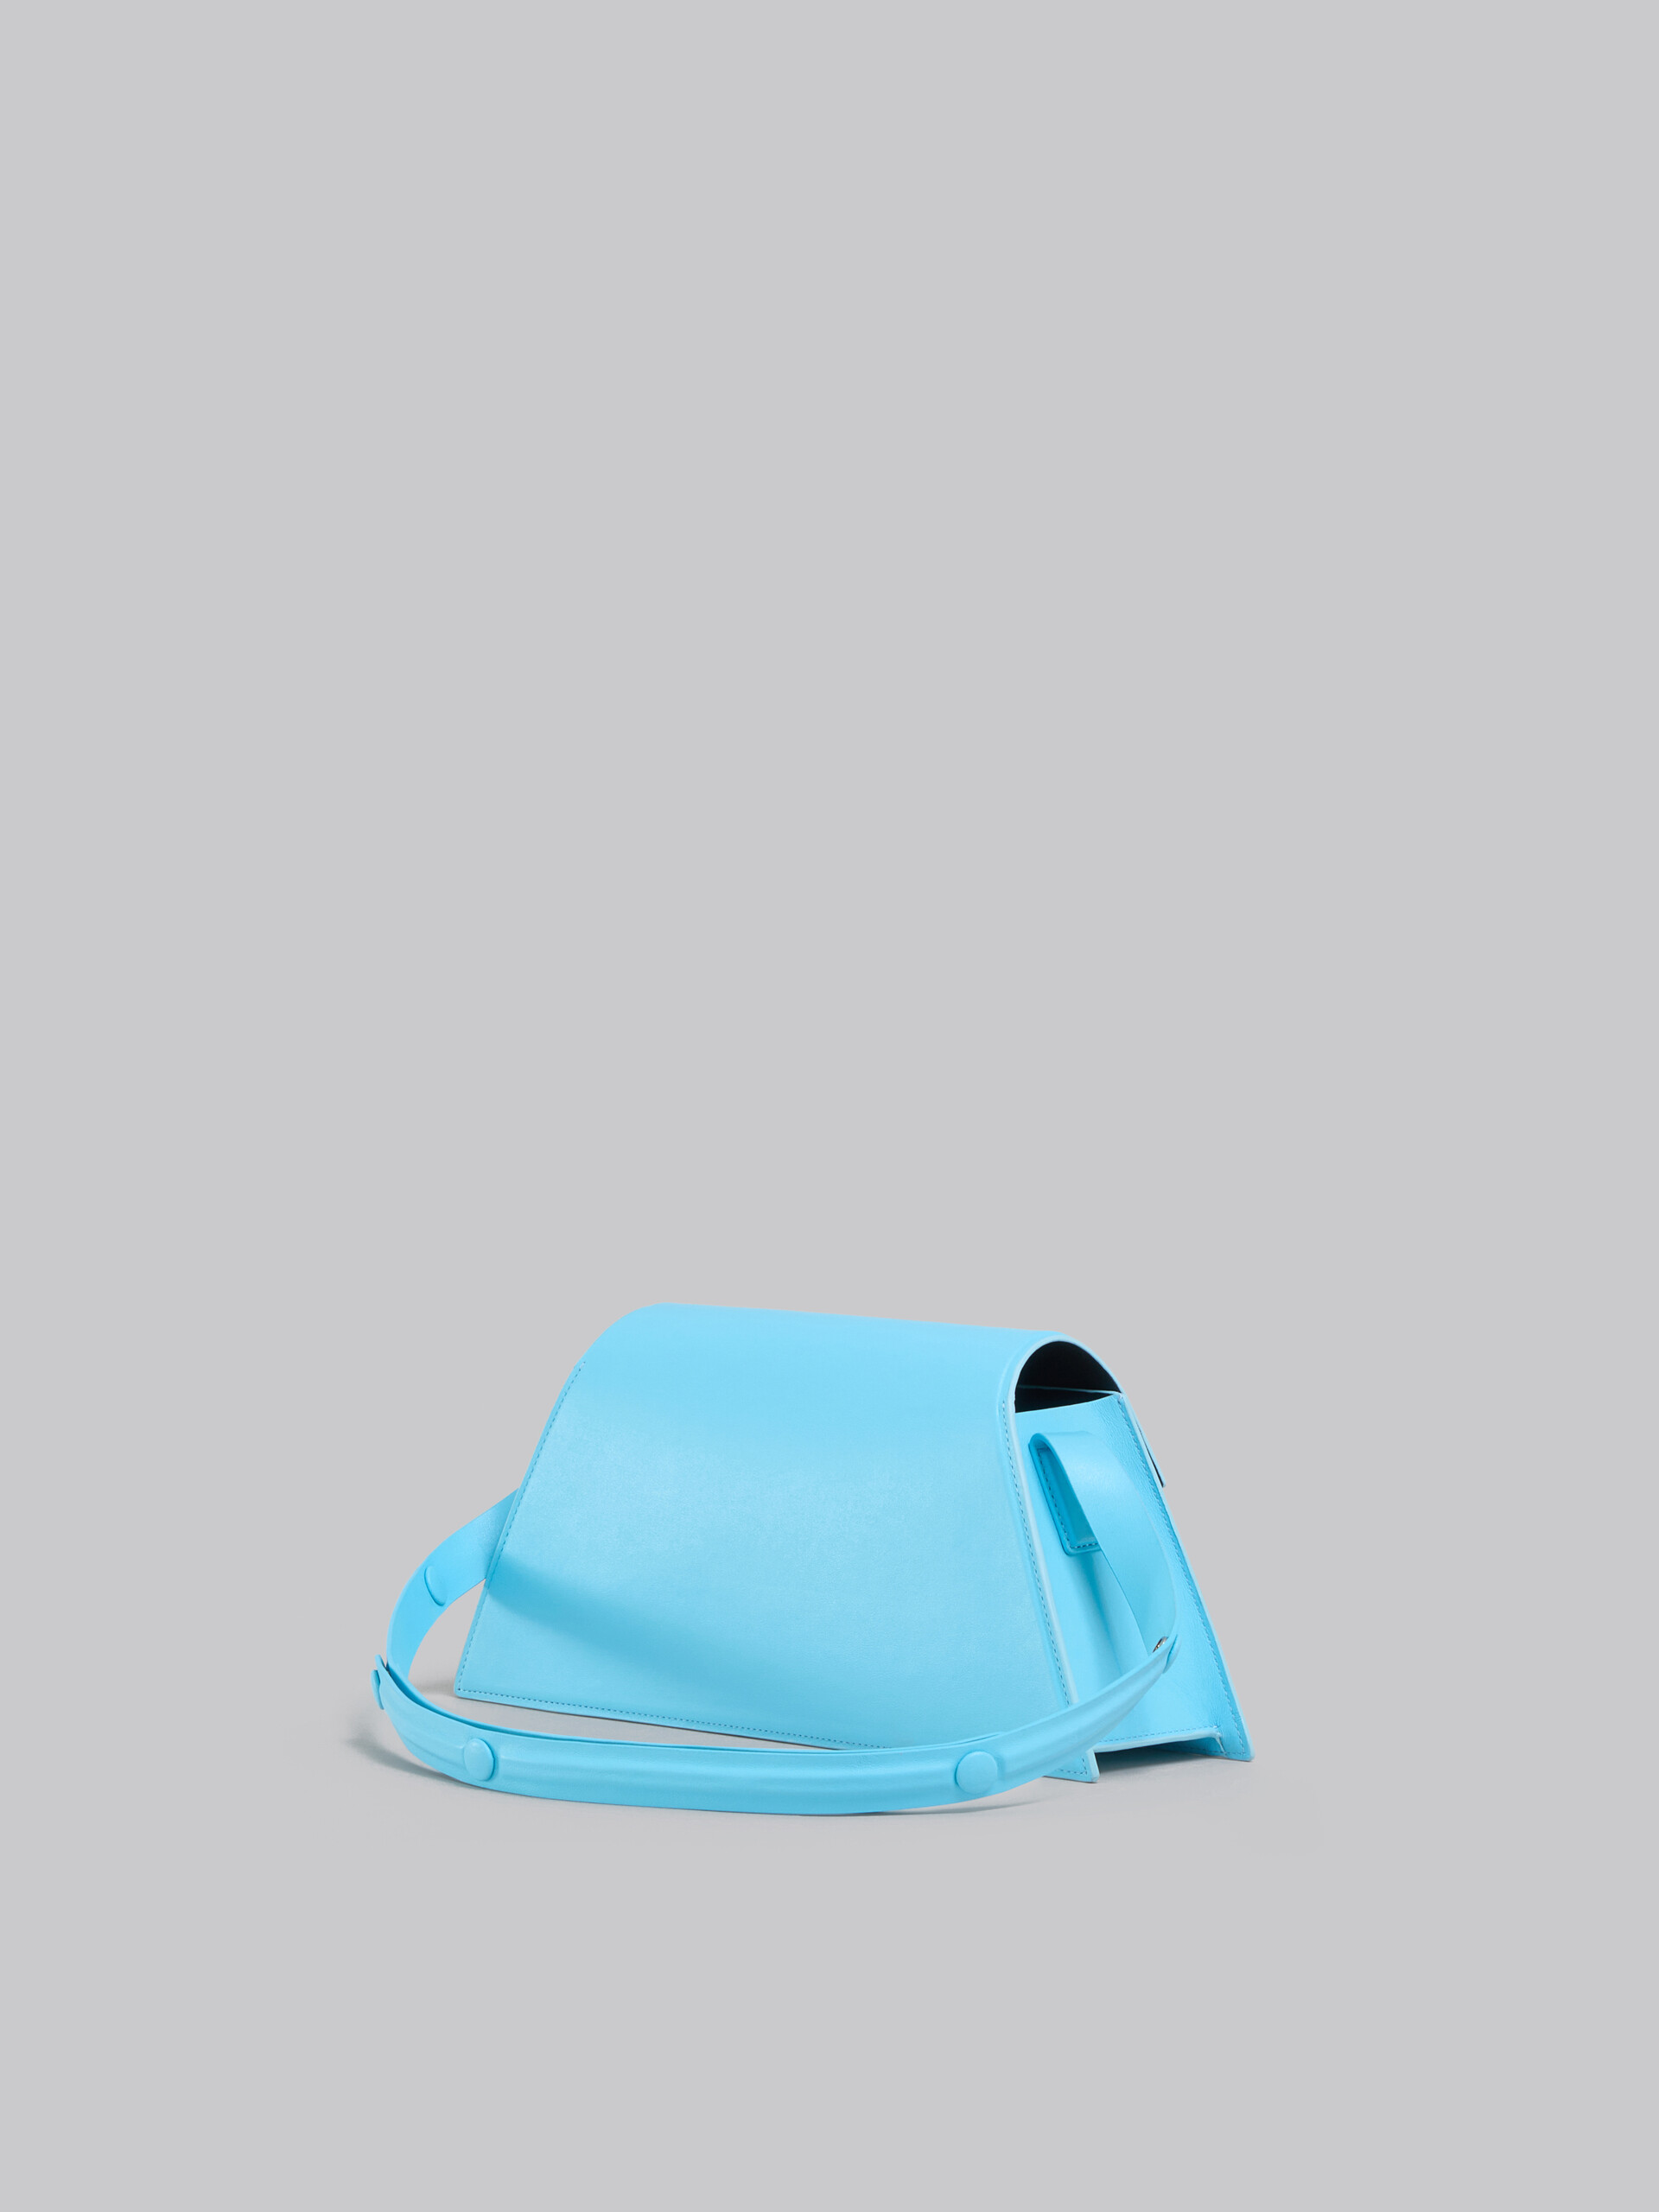 Sac Trunkoise de taille moyenne en cuir lisse bleu clair - Sacs portés épaule - Image 2